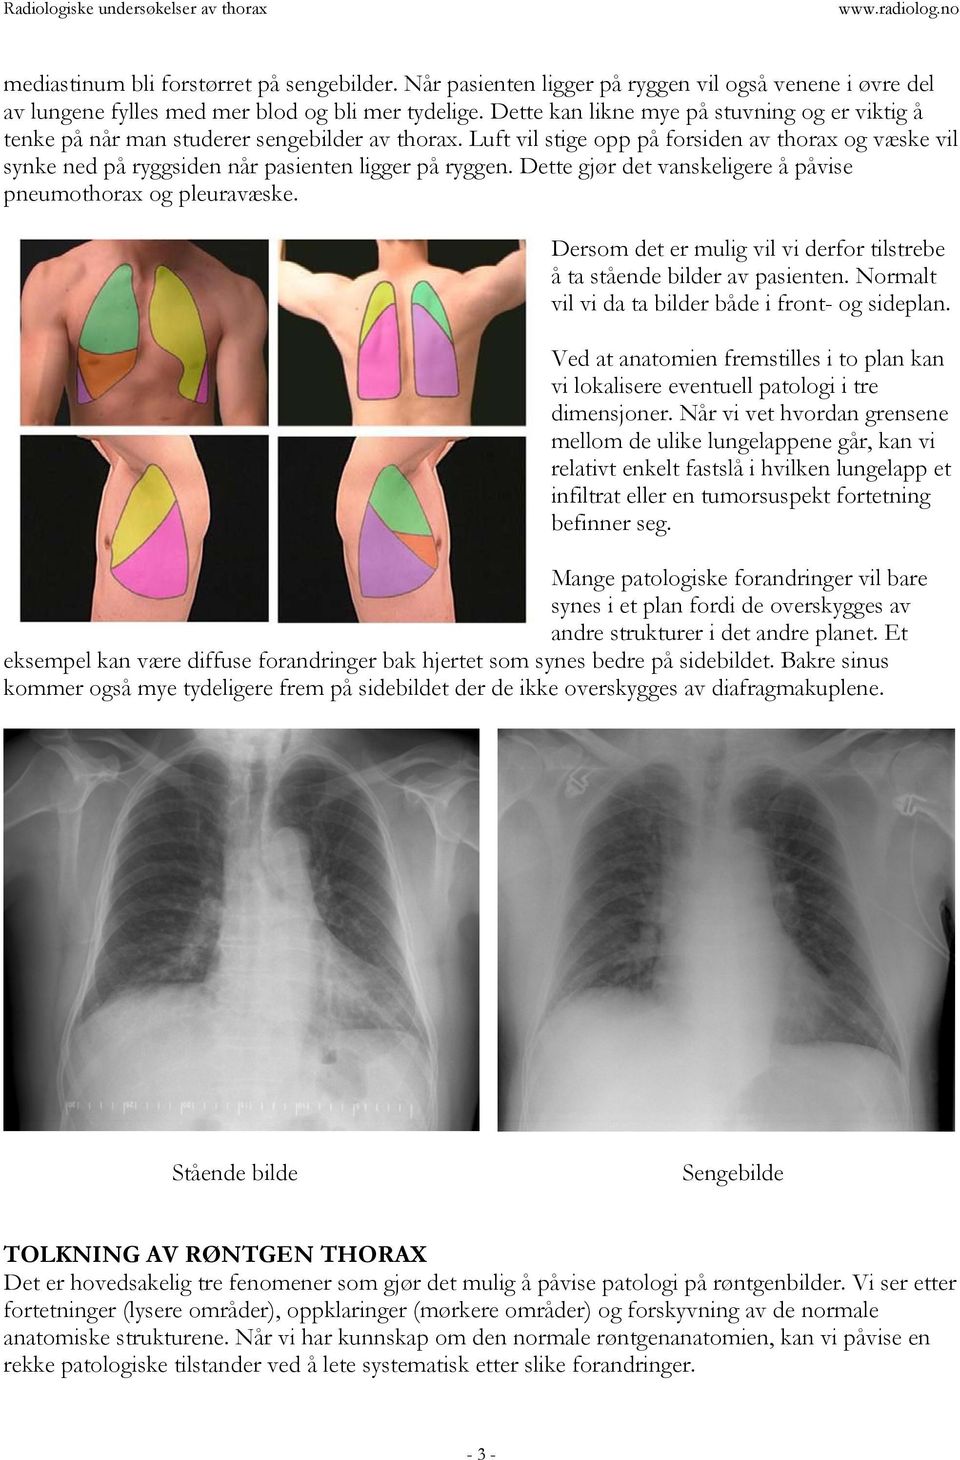 Luft vil stige opp på forsiden av thorax og væske vil synke ned på ryggsiden når pasienten ligger på ryggen. Dette gjør det vanskeligere å påvise pneumothorax og pleuravæske.